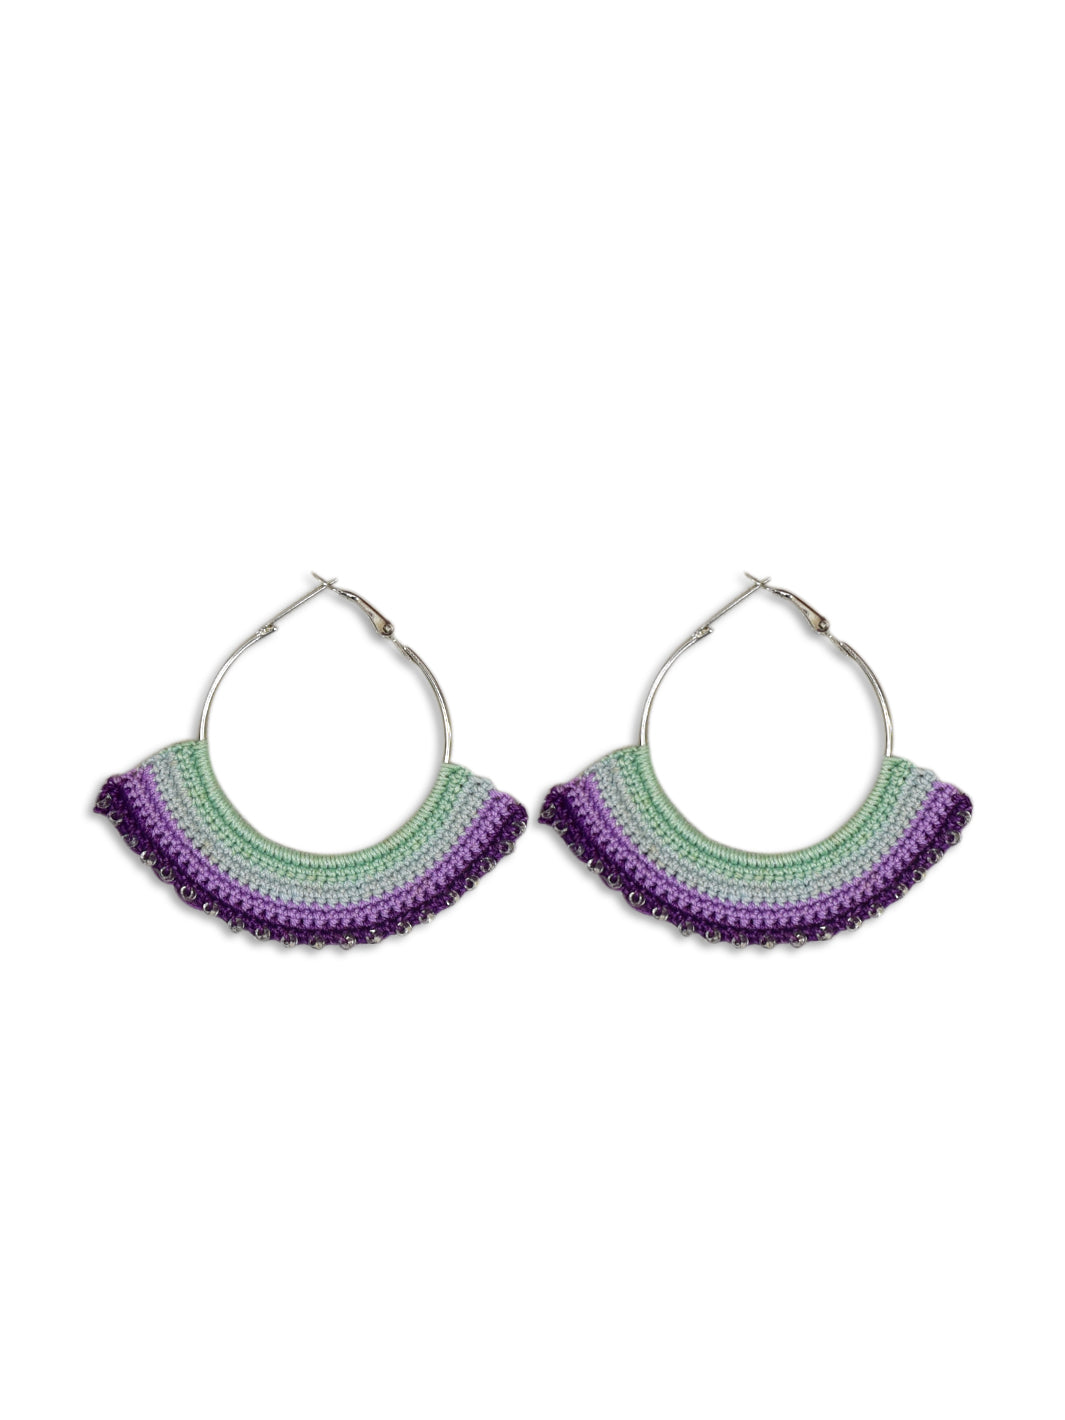 Handcrafted Crochet Earrings- Sea- Green